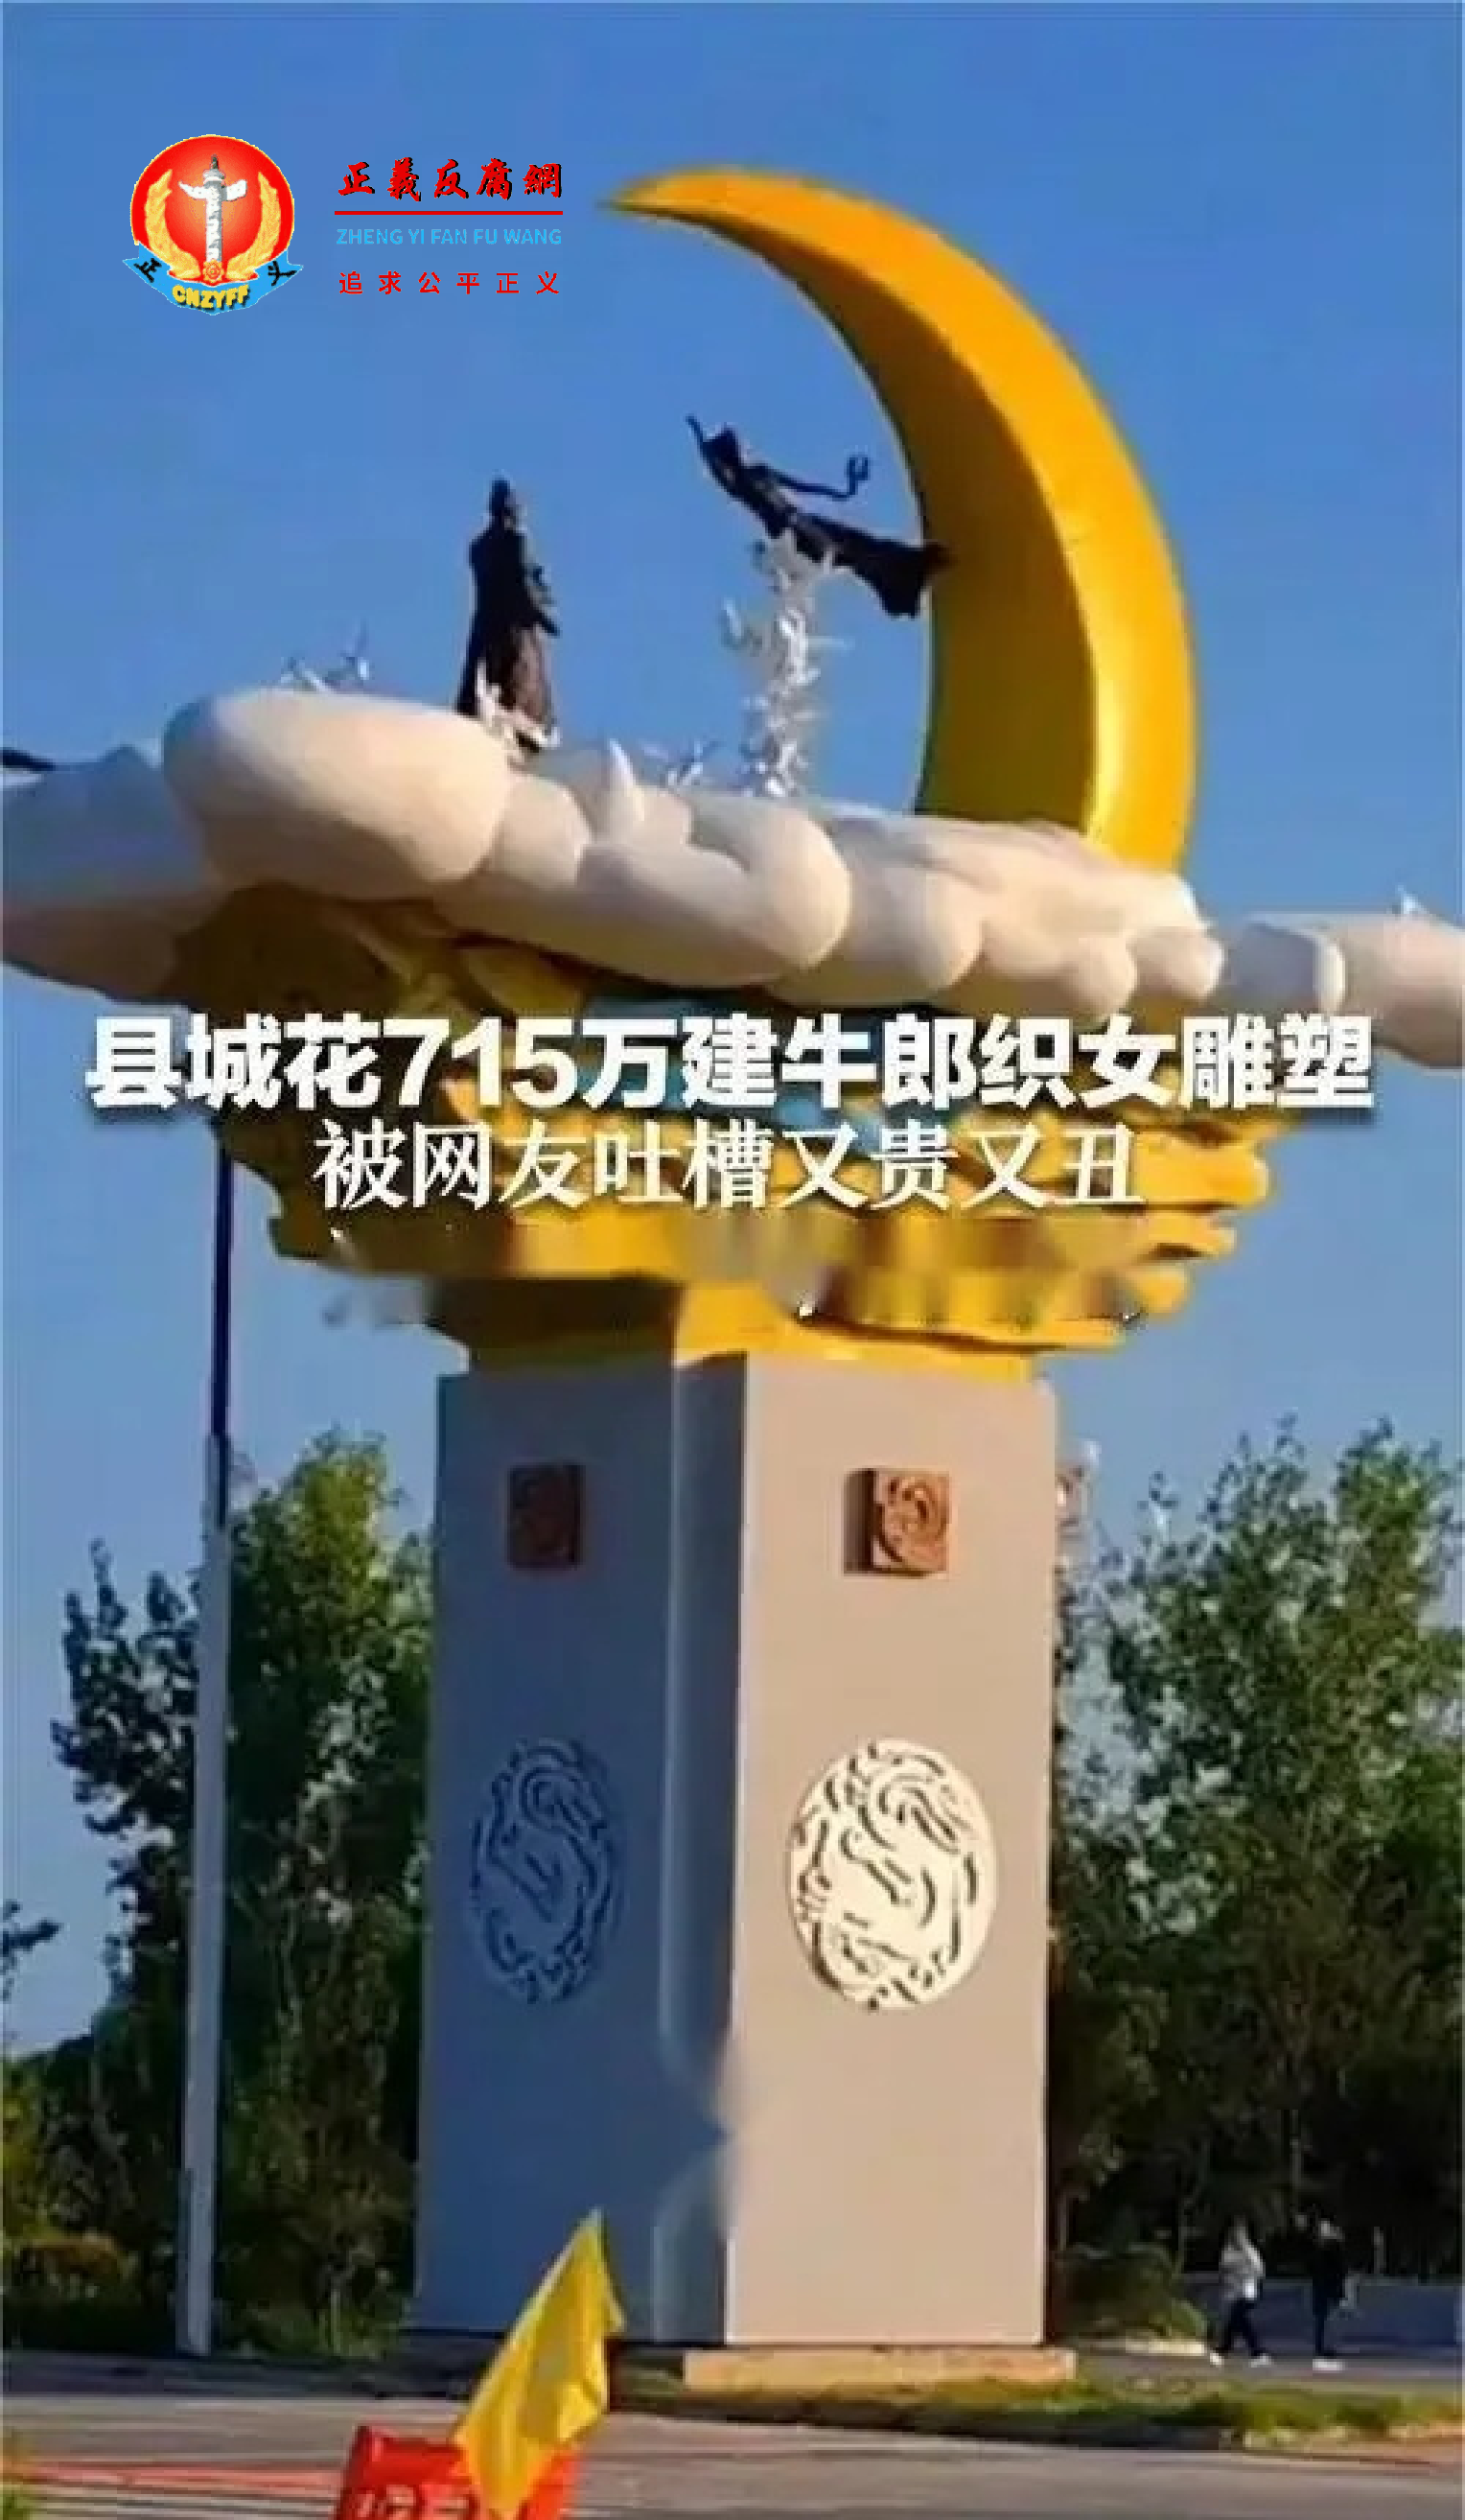 河南平顶山鲁县为贫困钱，花费700多万元建一个“牛郎织女”雕像为主题的地标，被民众吐槽丑又贵。.png